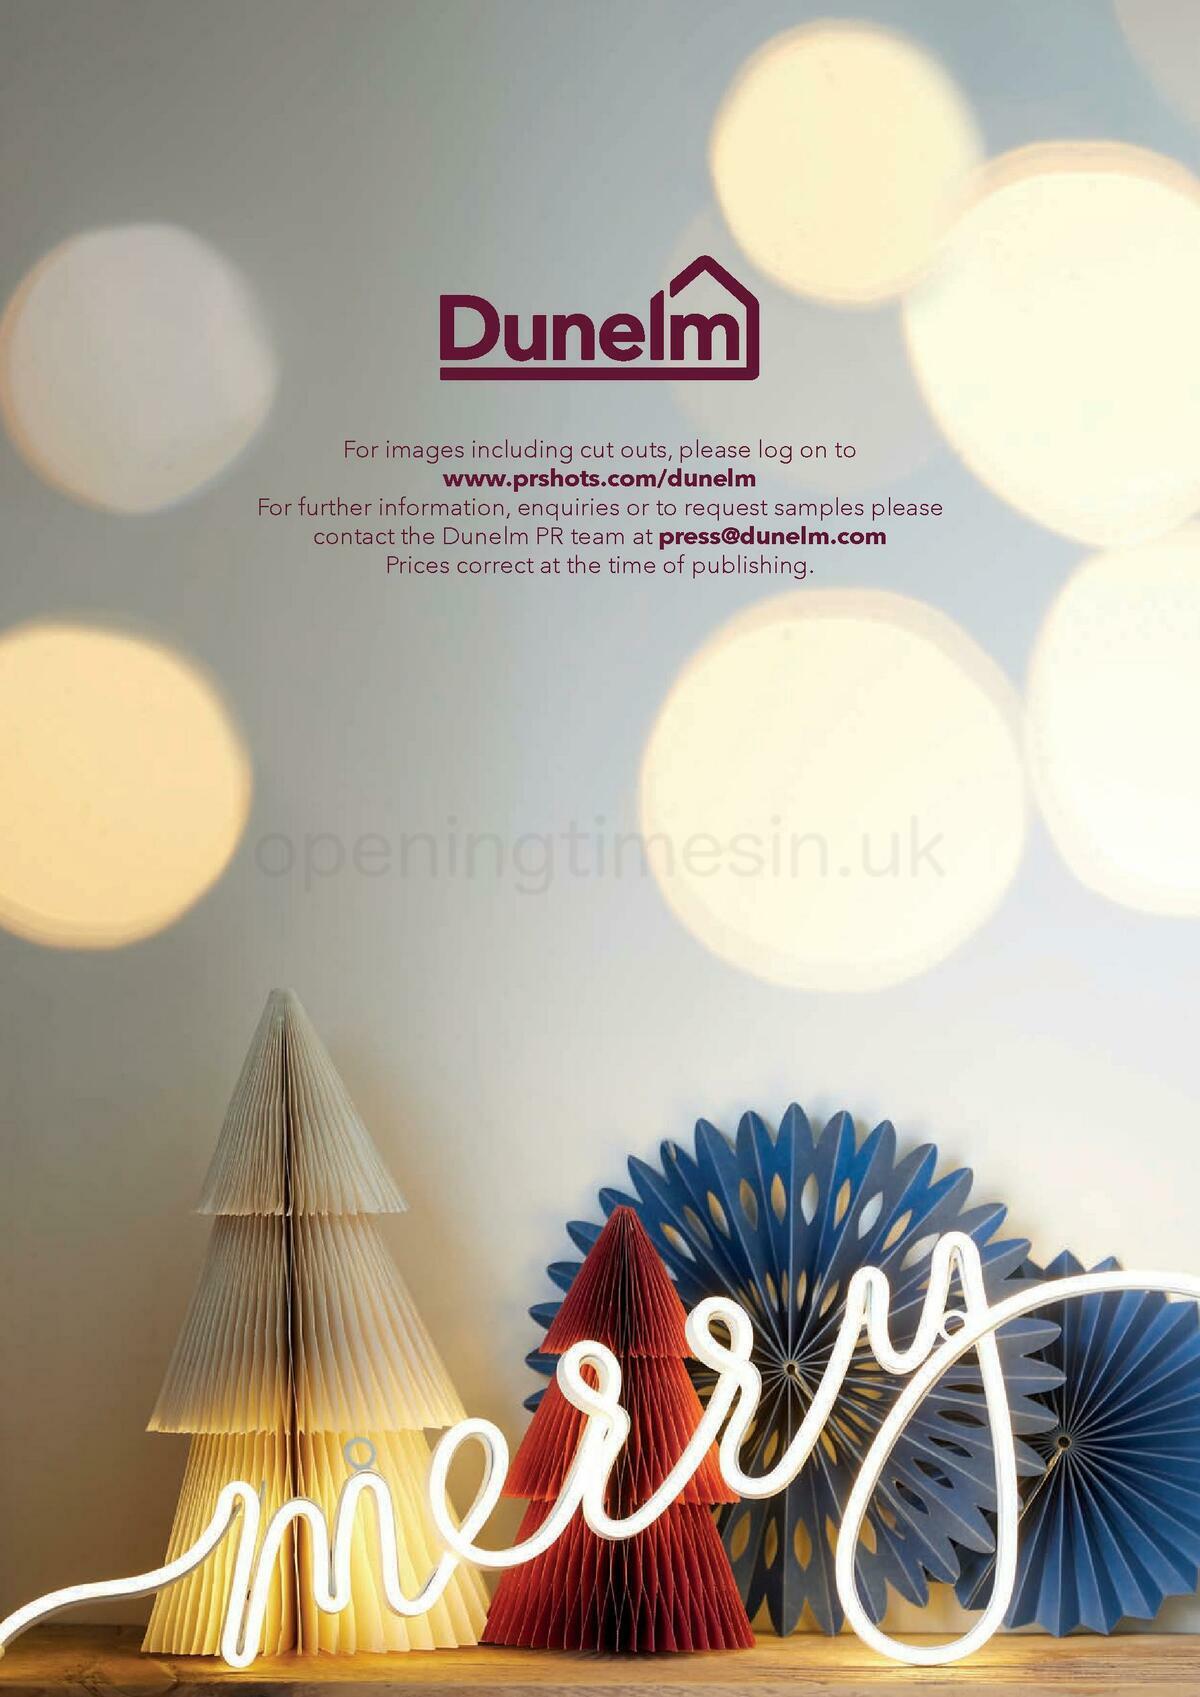 Dunelm Christmas Offers from 1 September